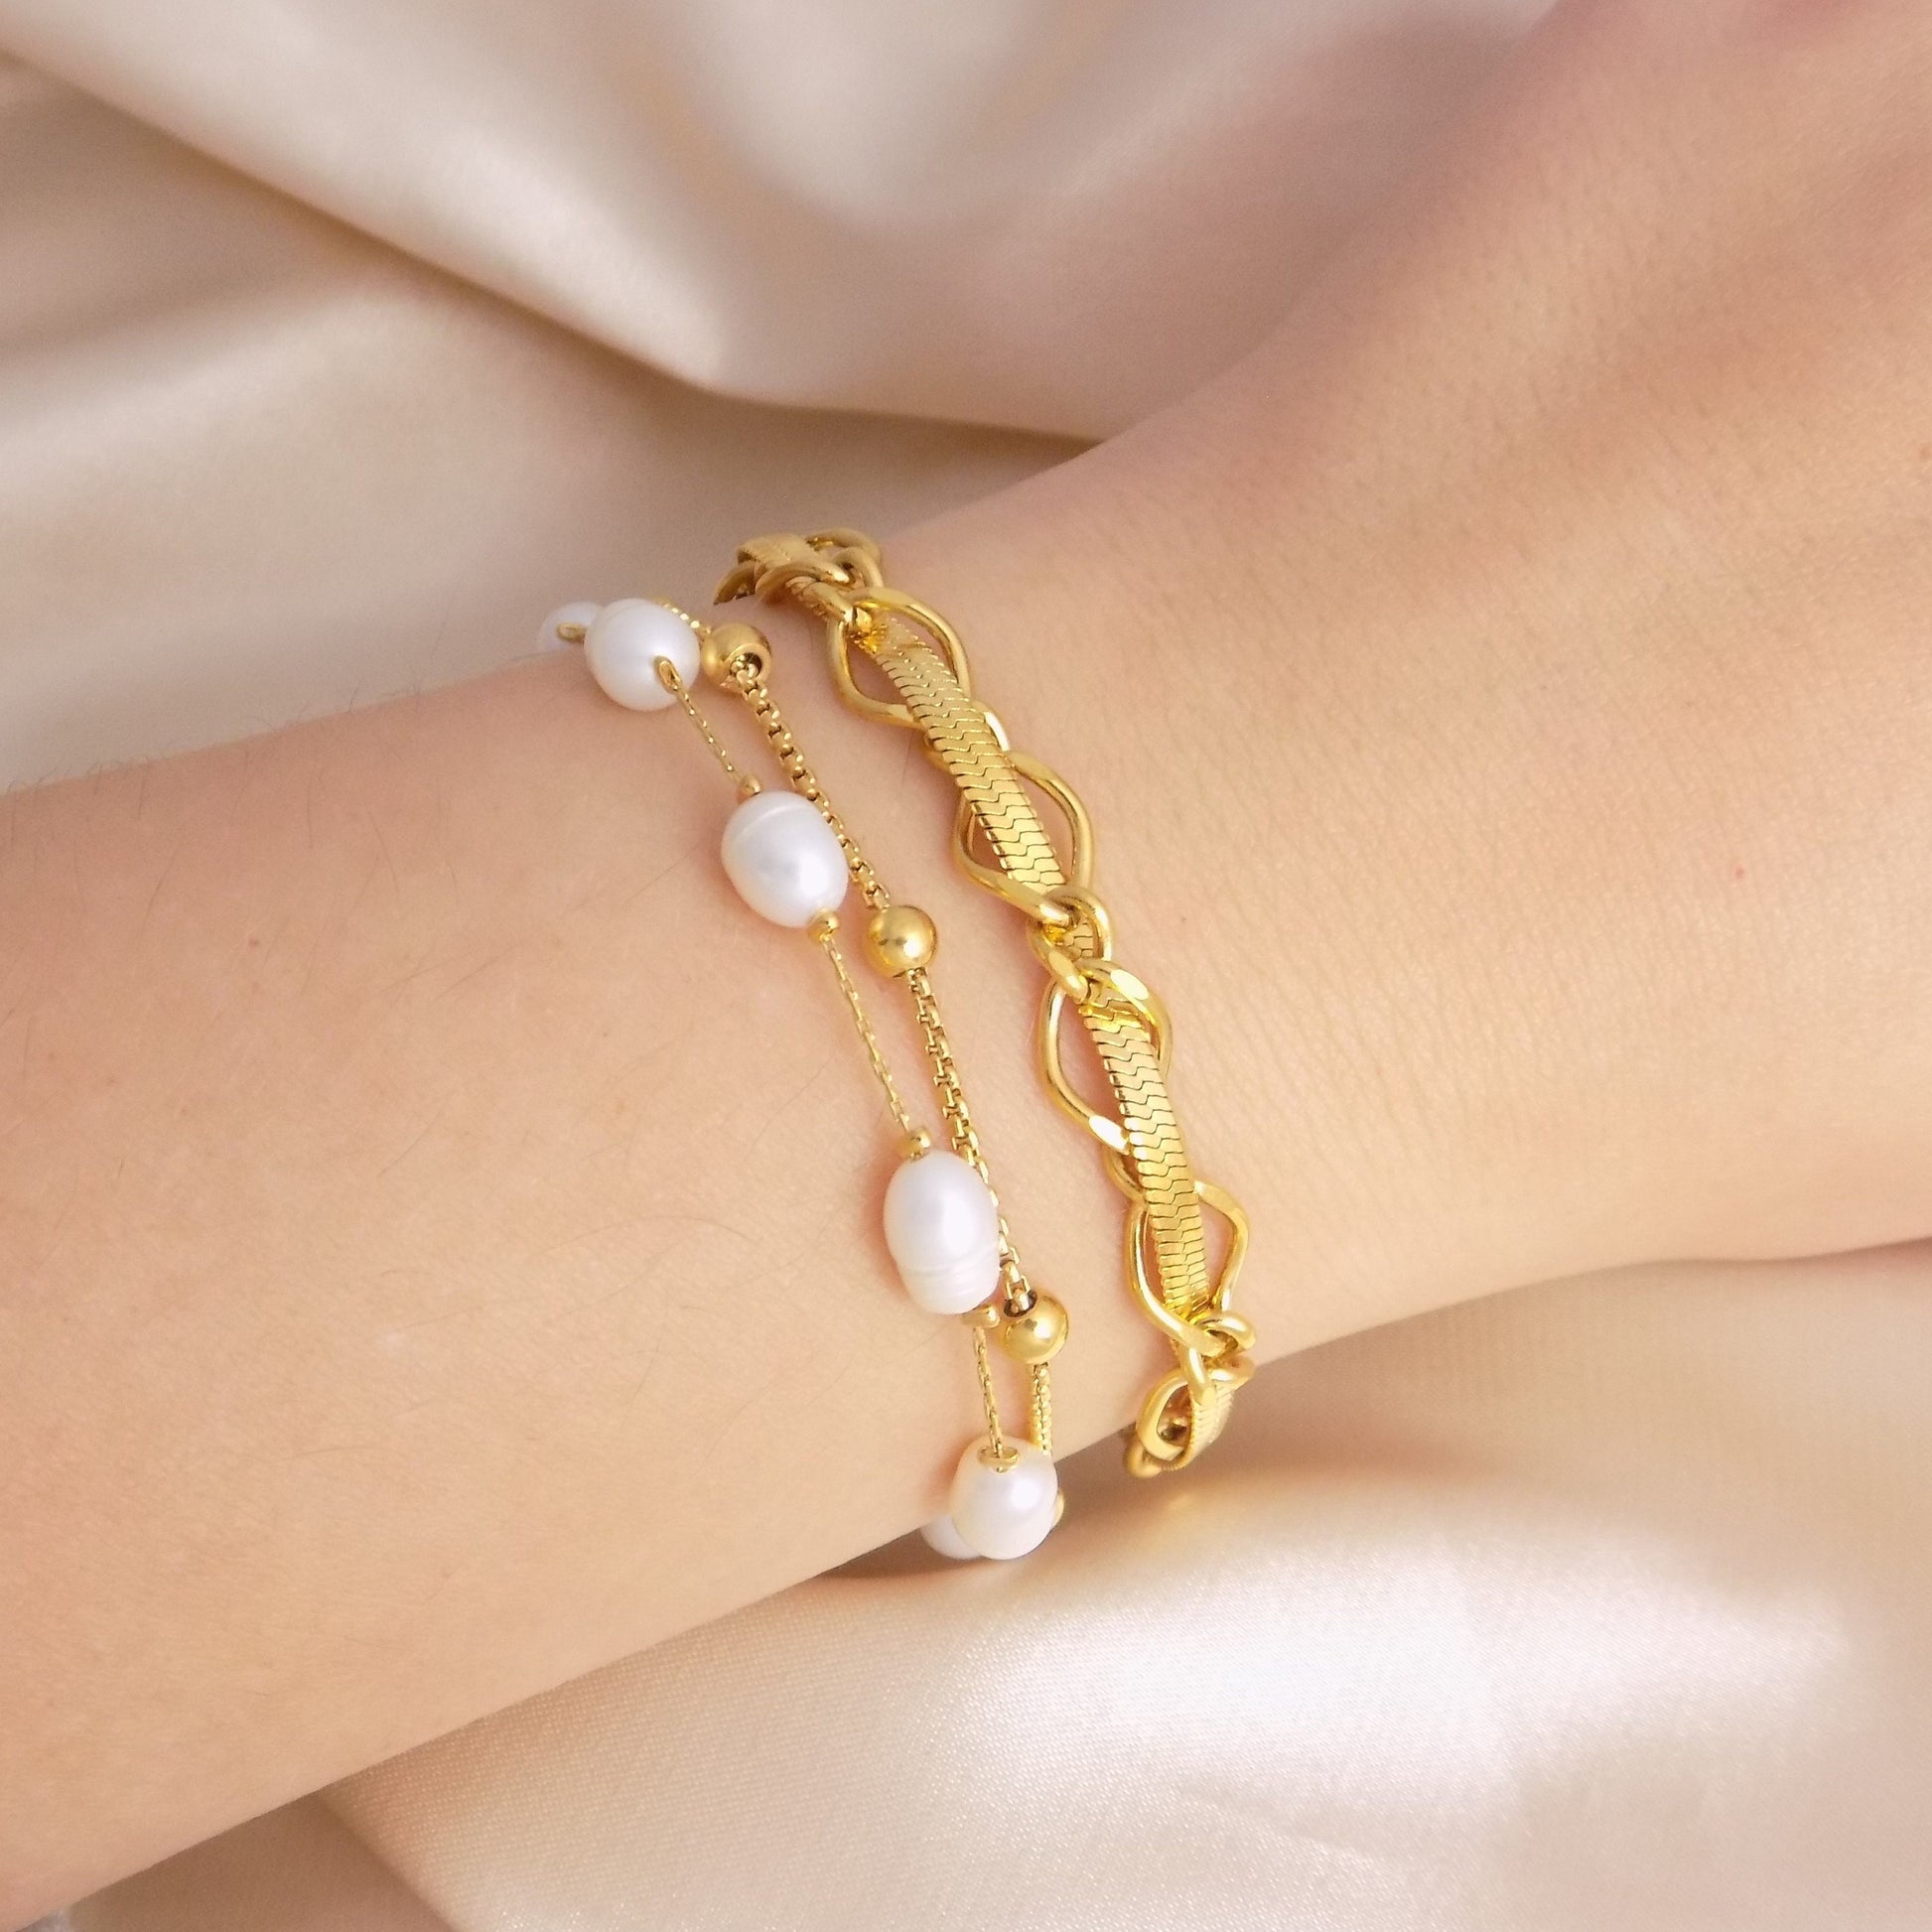 18K Gold Snake Chain Bracelet Adjustable Stainless Steel, Freshwater Pearl Bracelet, Christmas Gift For Her - M7-140